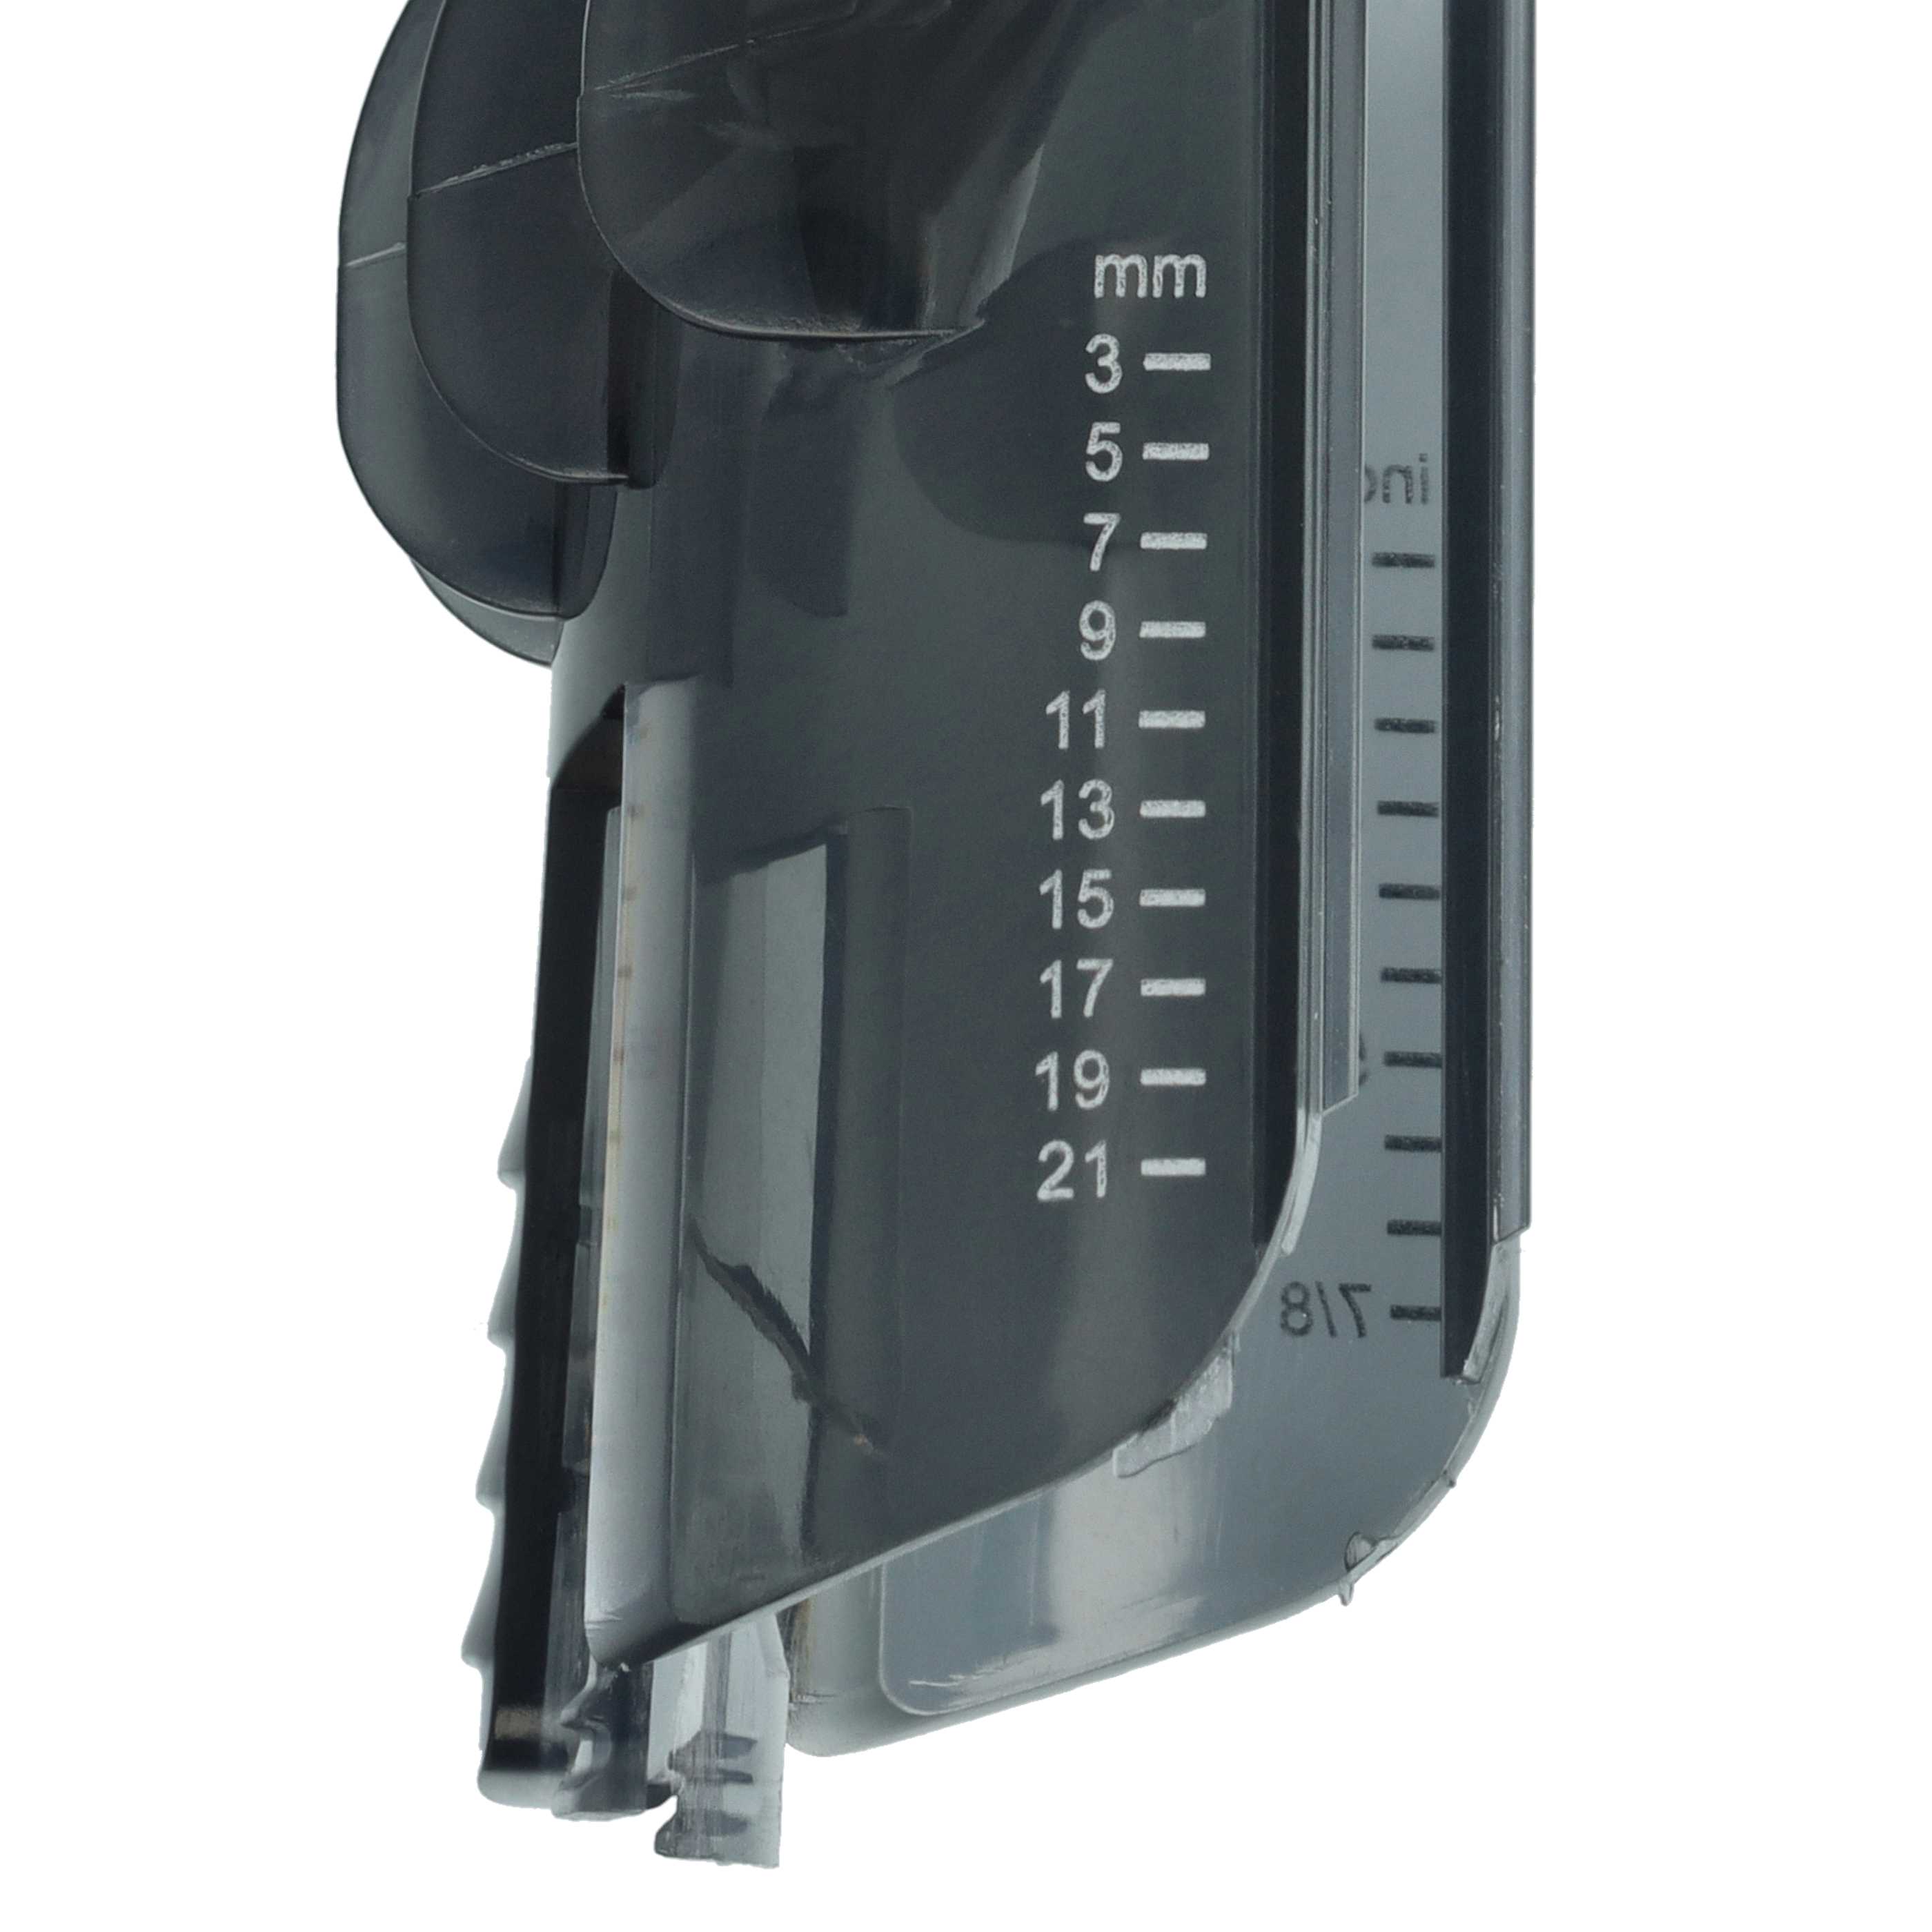 Sabot 3 - 21 mm (1/8" - 7/8") remplace Philips CRP389 pour tondeuse à cheveux Philips